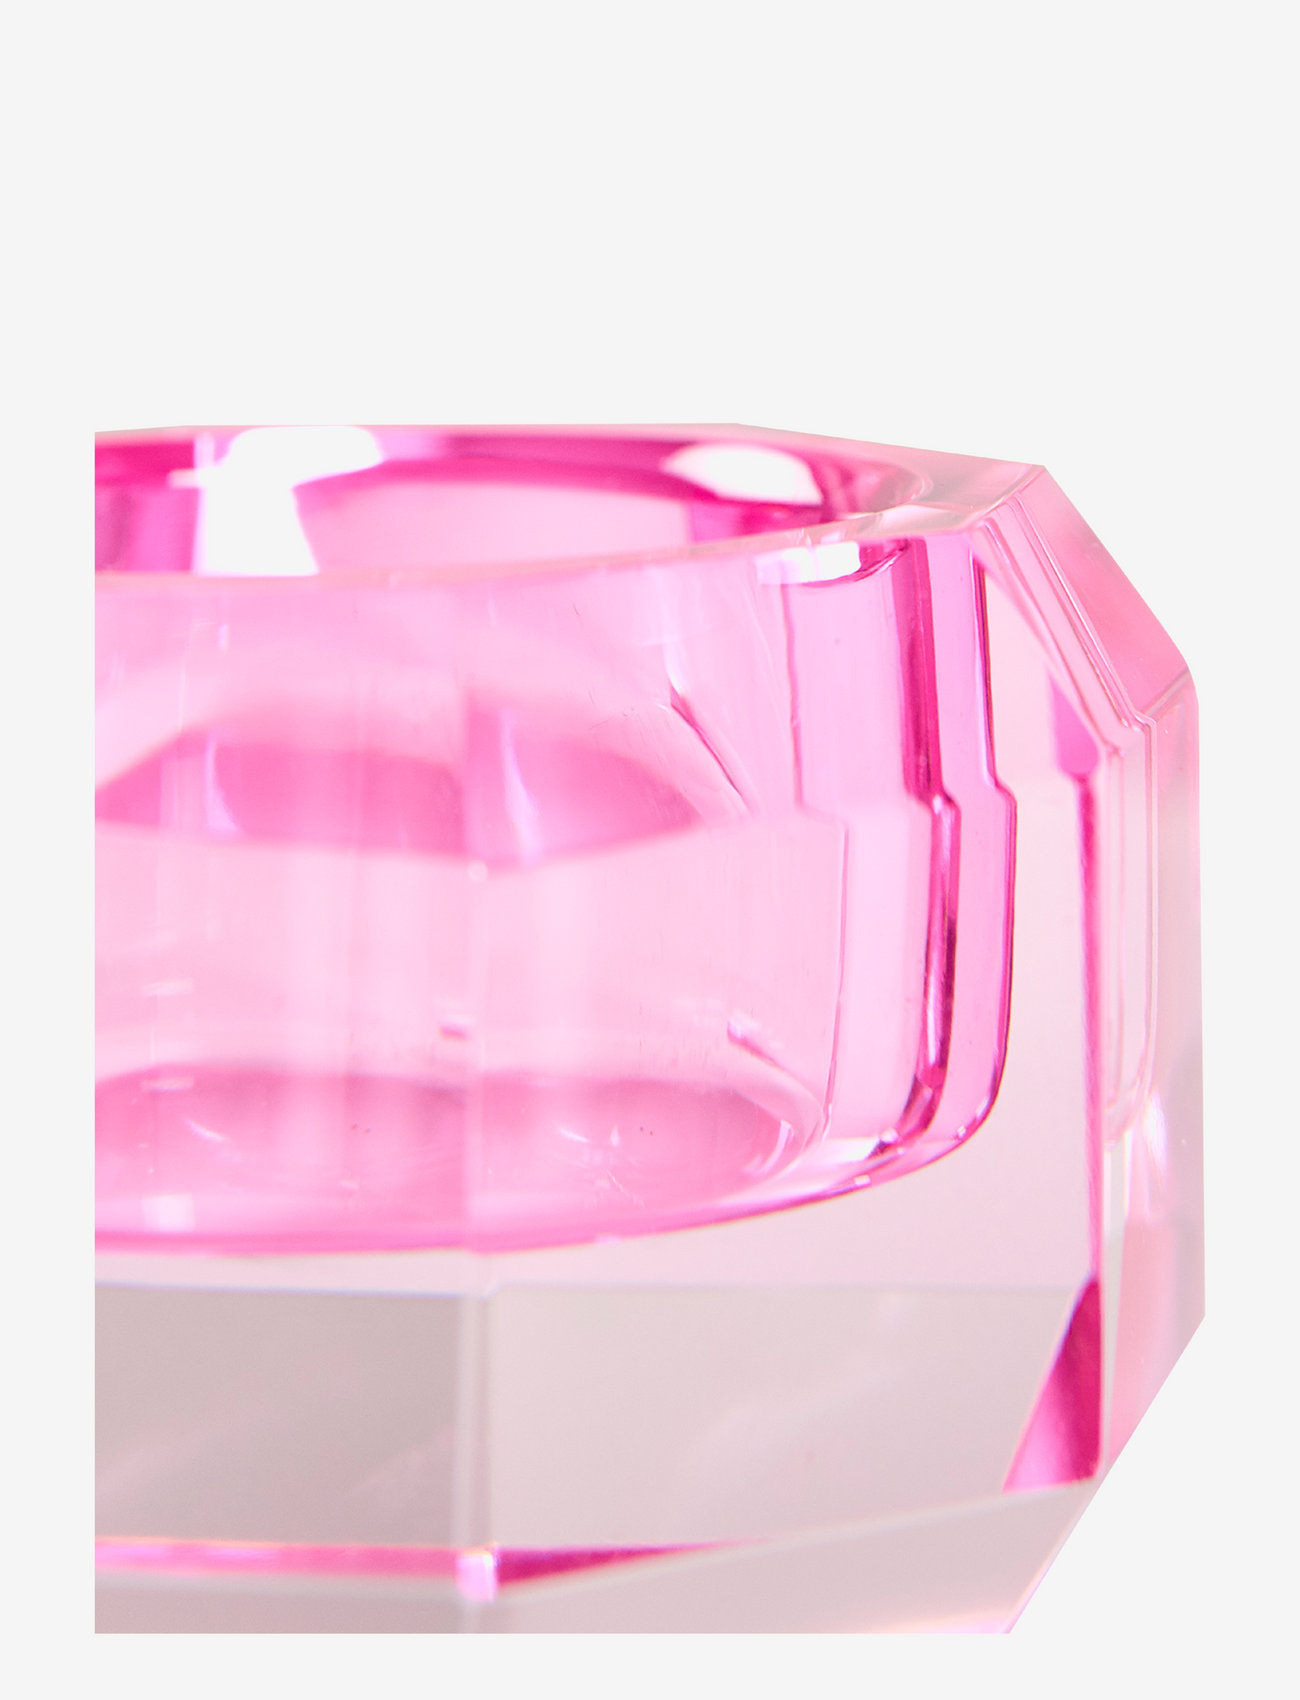 C'est Bon - Krystal lysestage - laveste priser - pink - 1